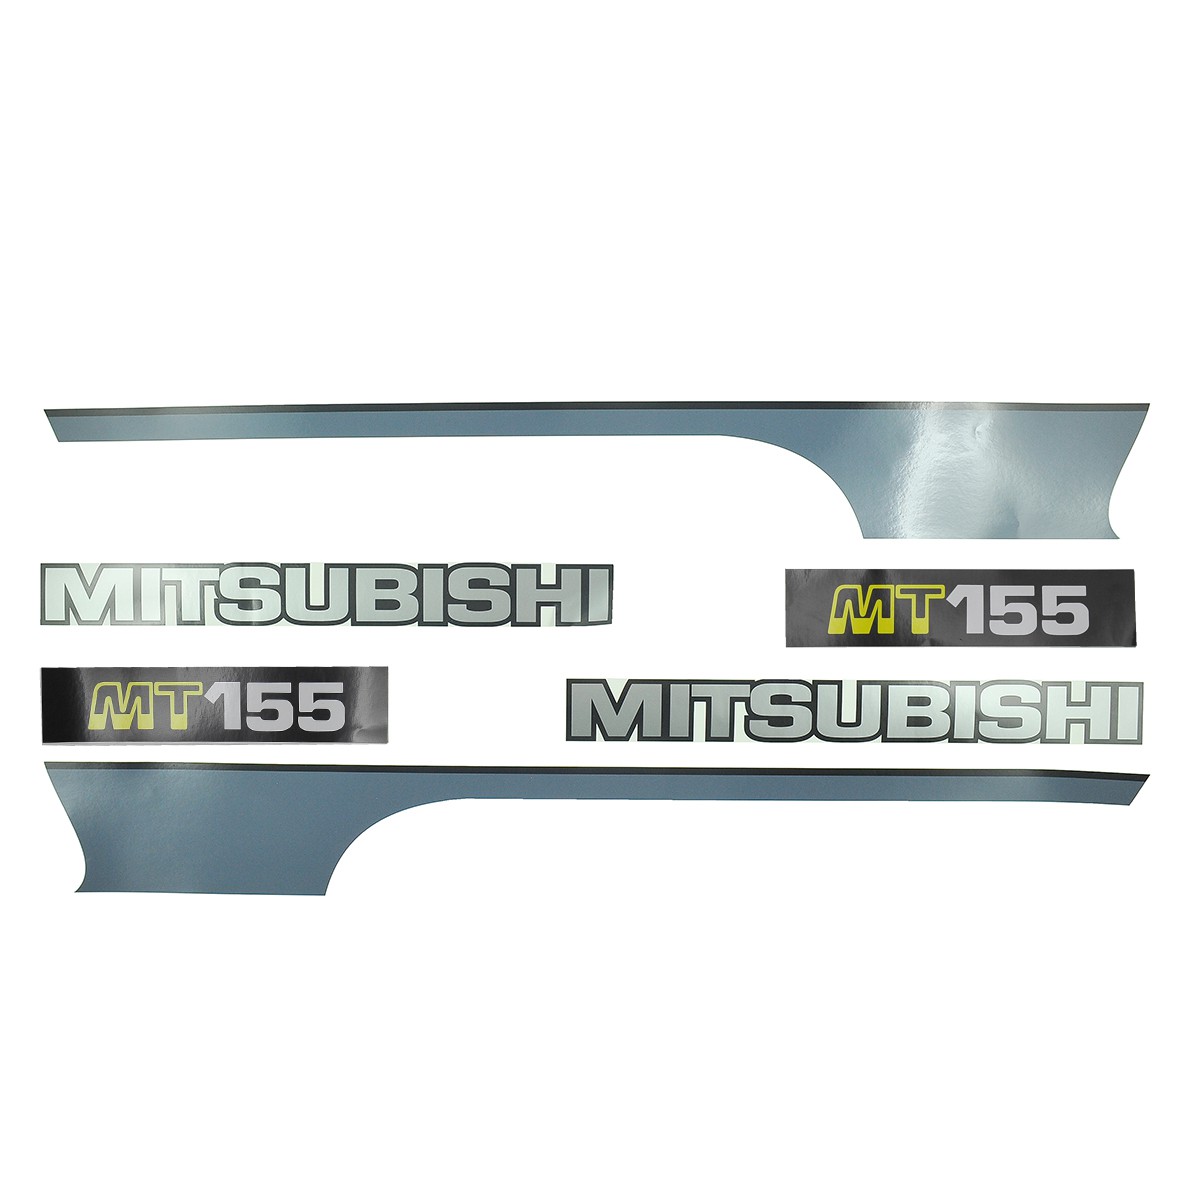 Mitsubishi MT155 stickers